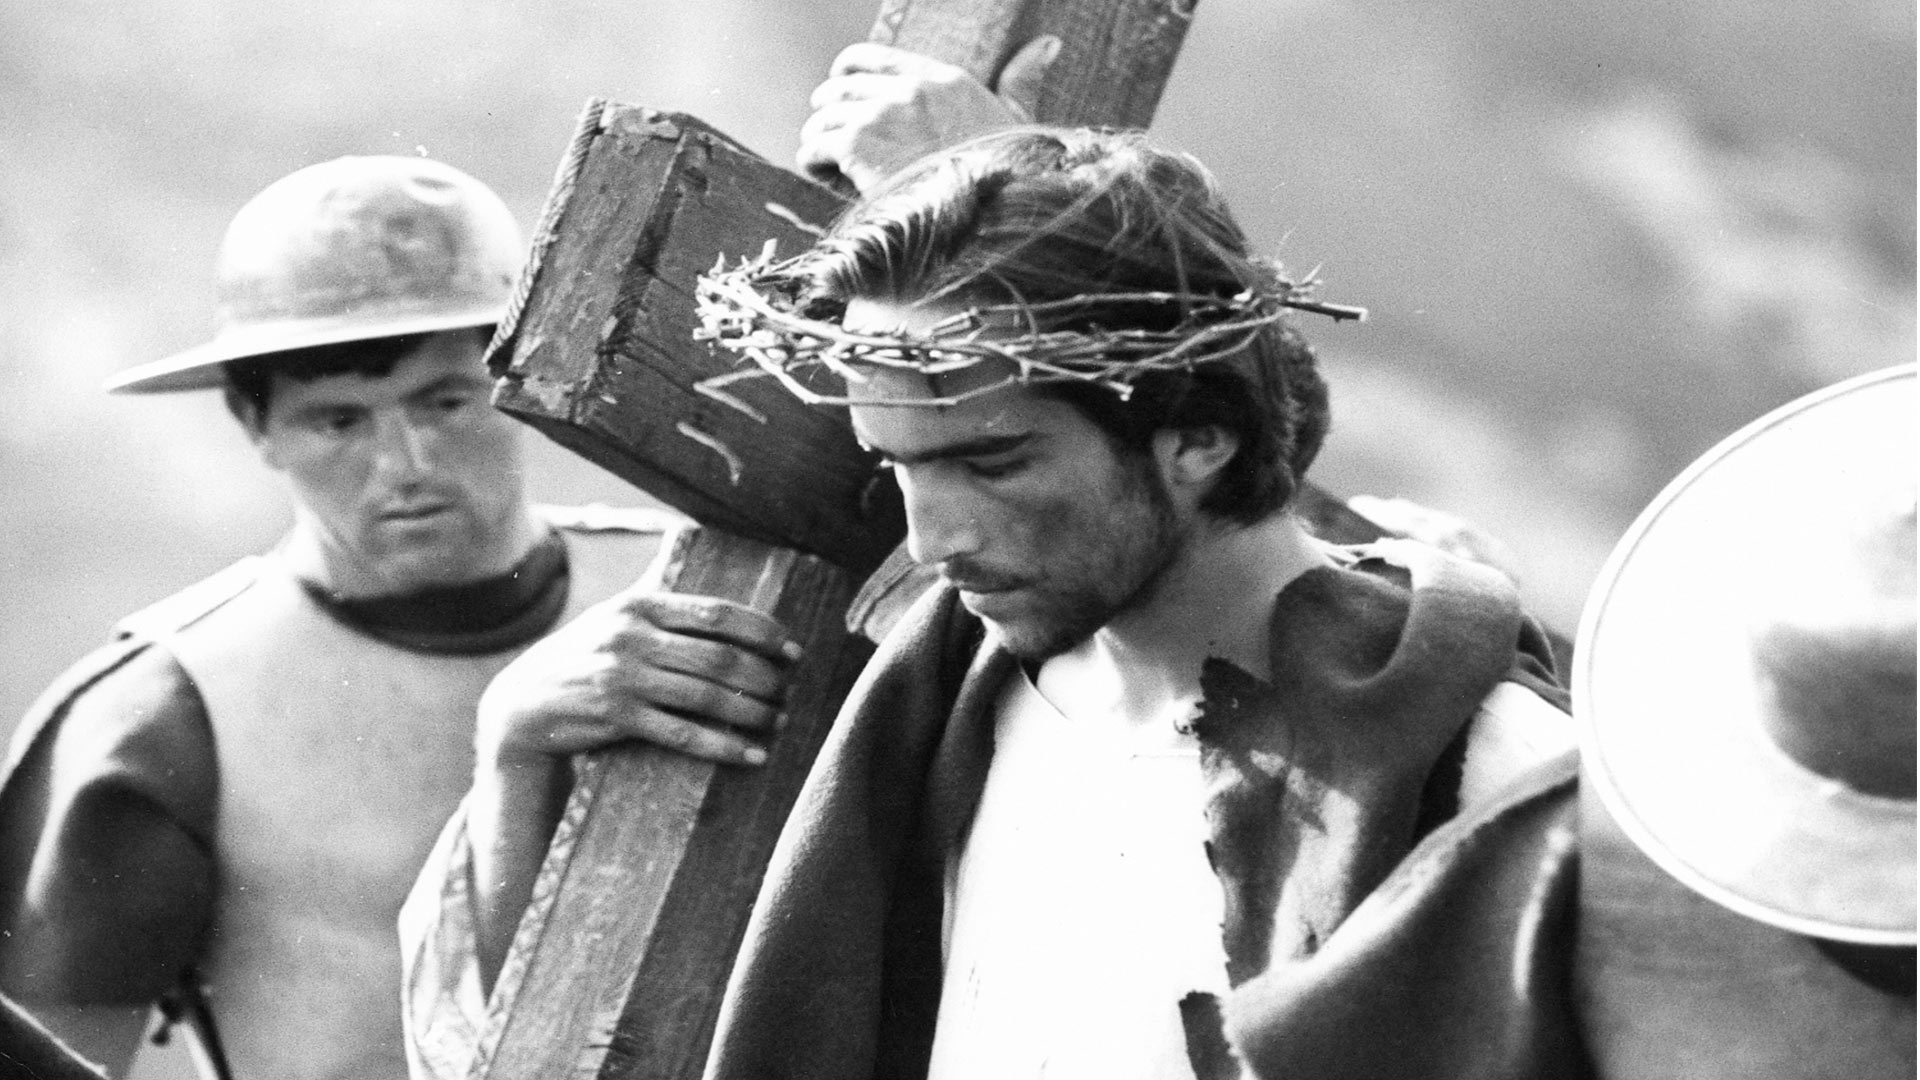 بازیگر در حال کشیدن صلیب در فیلم انجیل به روایت متی